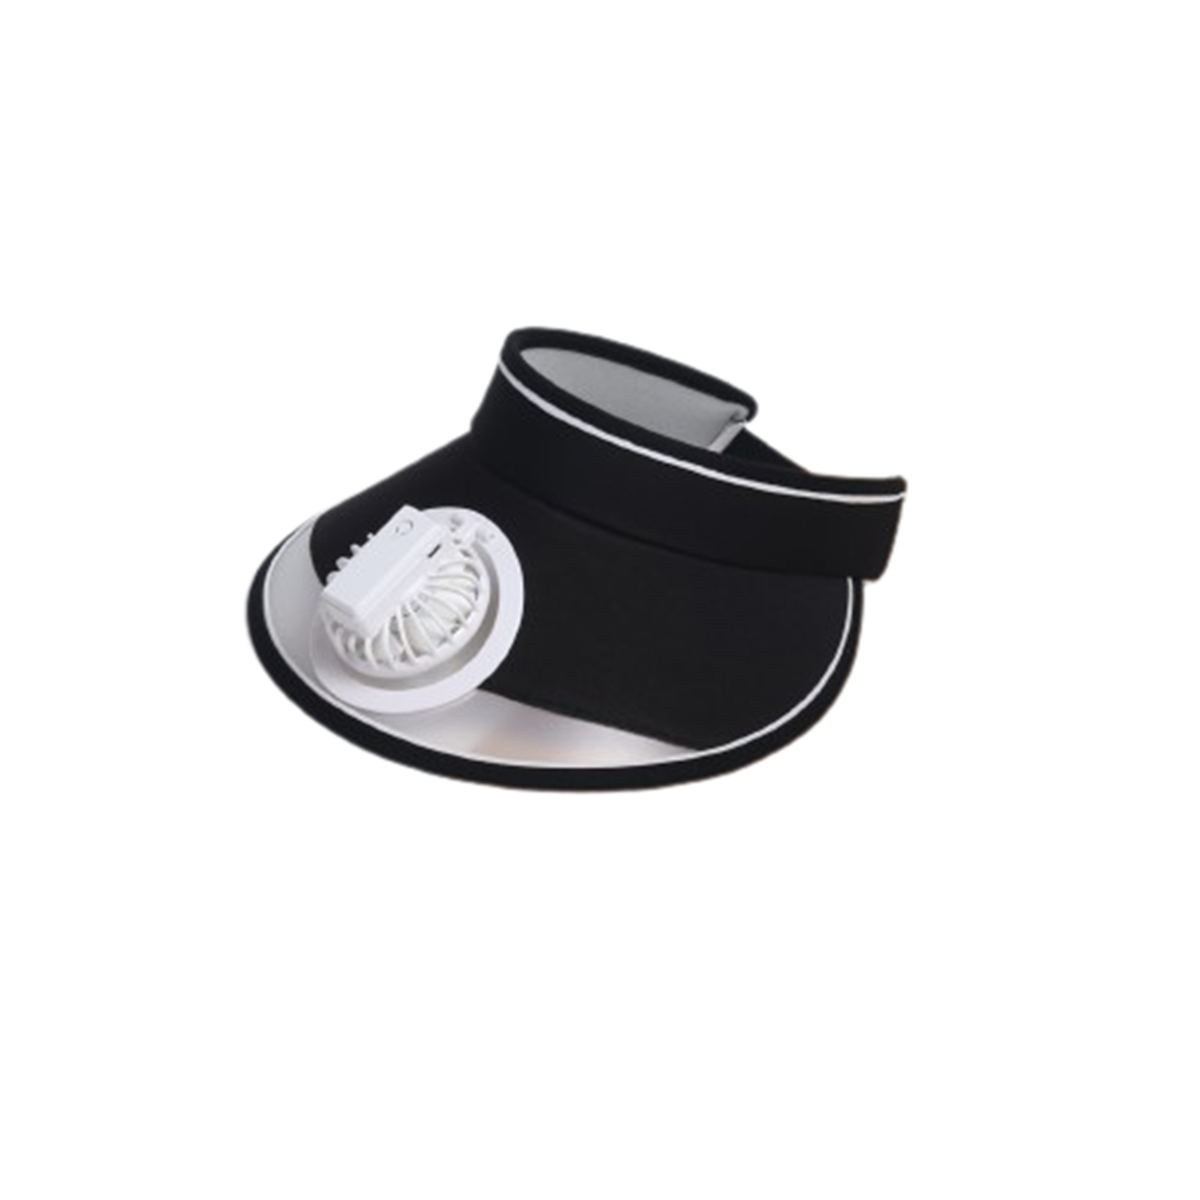 Fan Weißer Weiß SYNTEK wiederaufladbarer USB Sonnenhut Hut Hut Hut leerer Sonnenschutz Kinder Fan